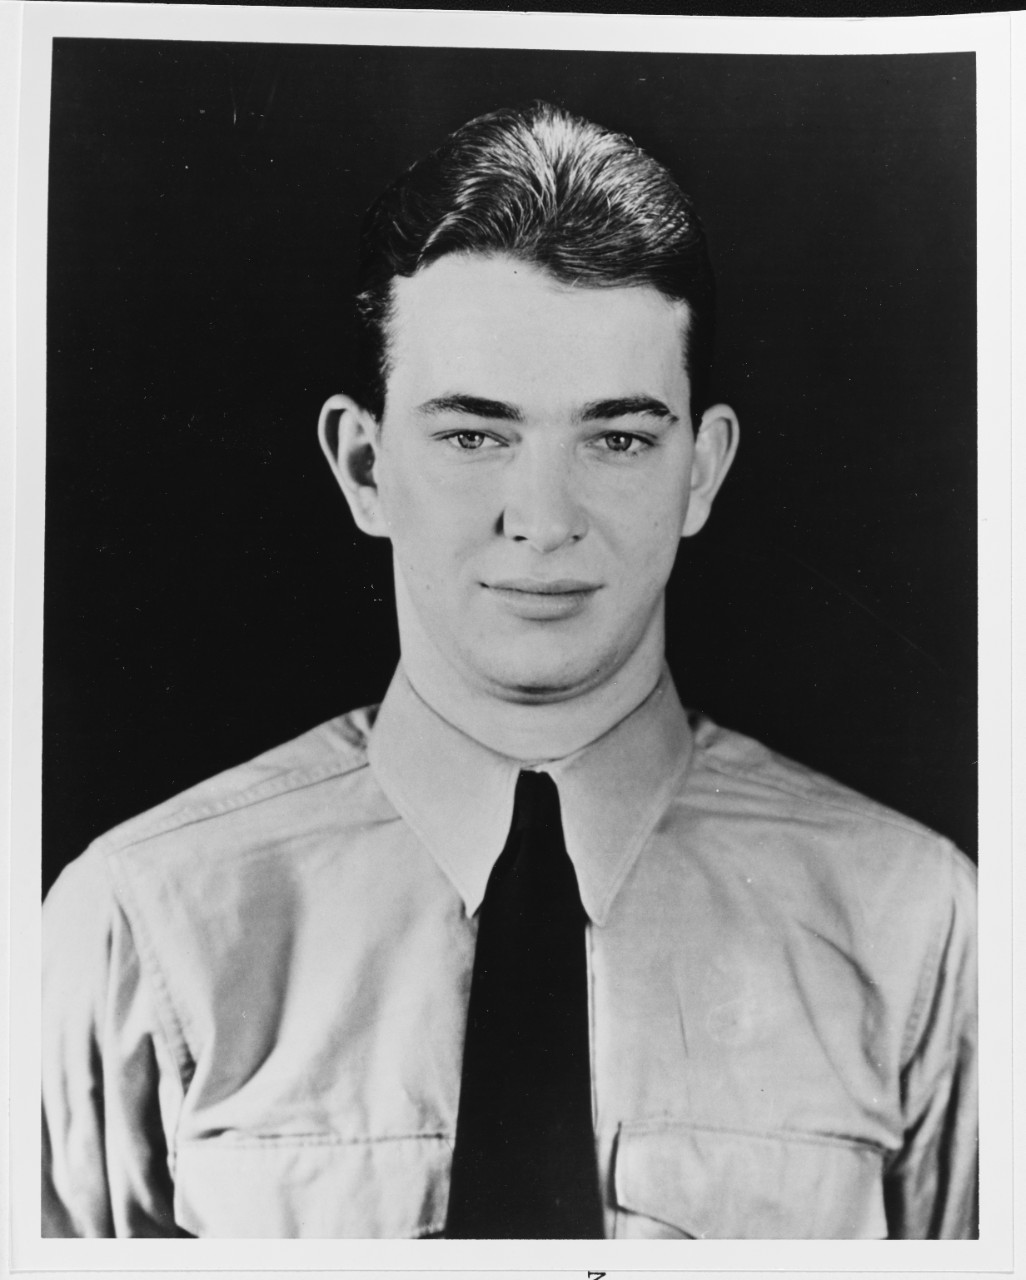 Herbert Hugo Menges, Aviation Cadet, USNR (1917-1941)